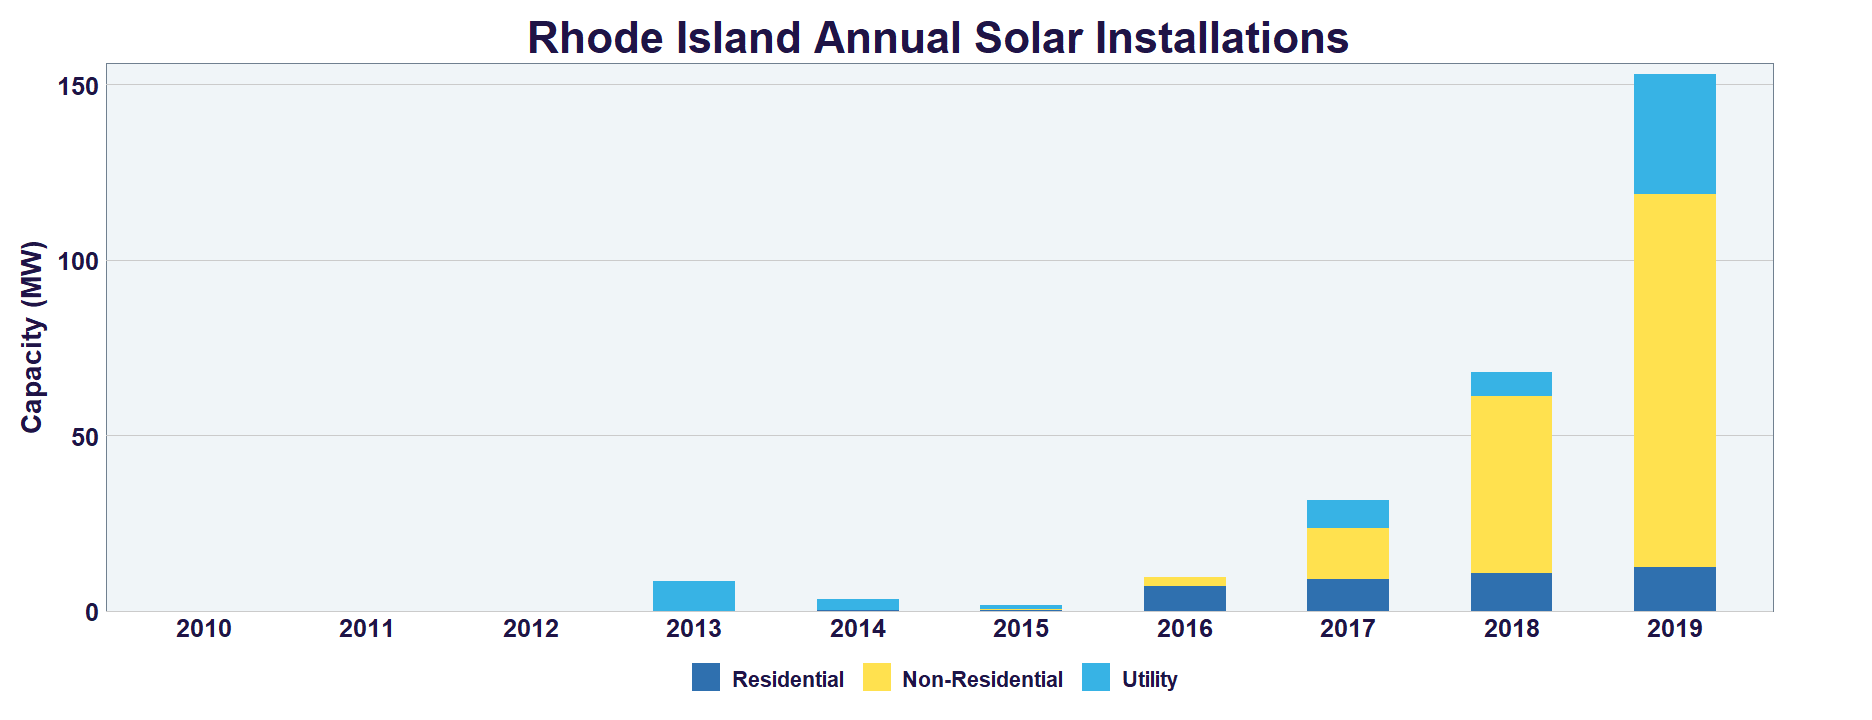 Rhode Island Annual Solar Installations